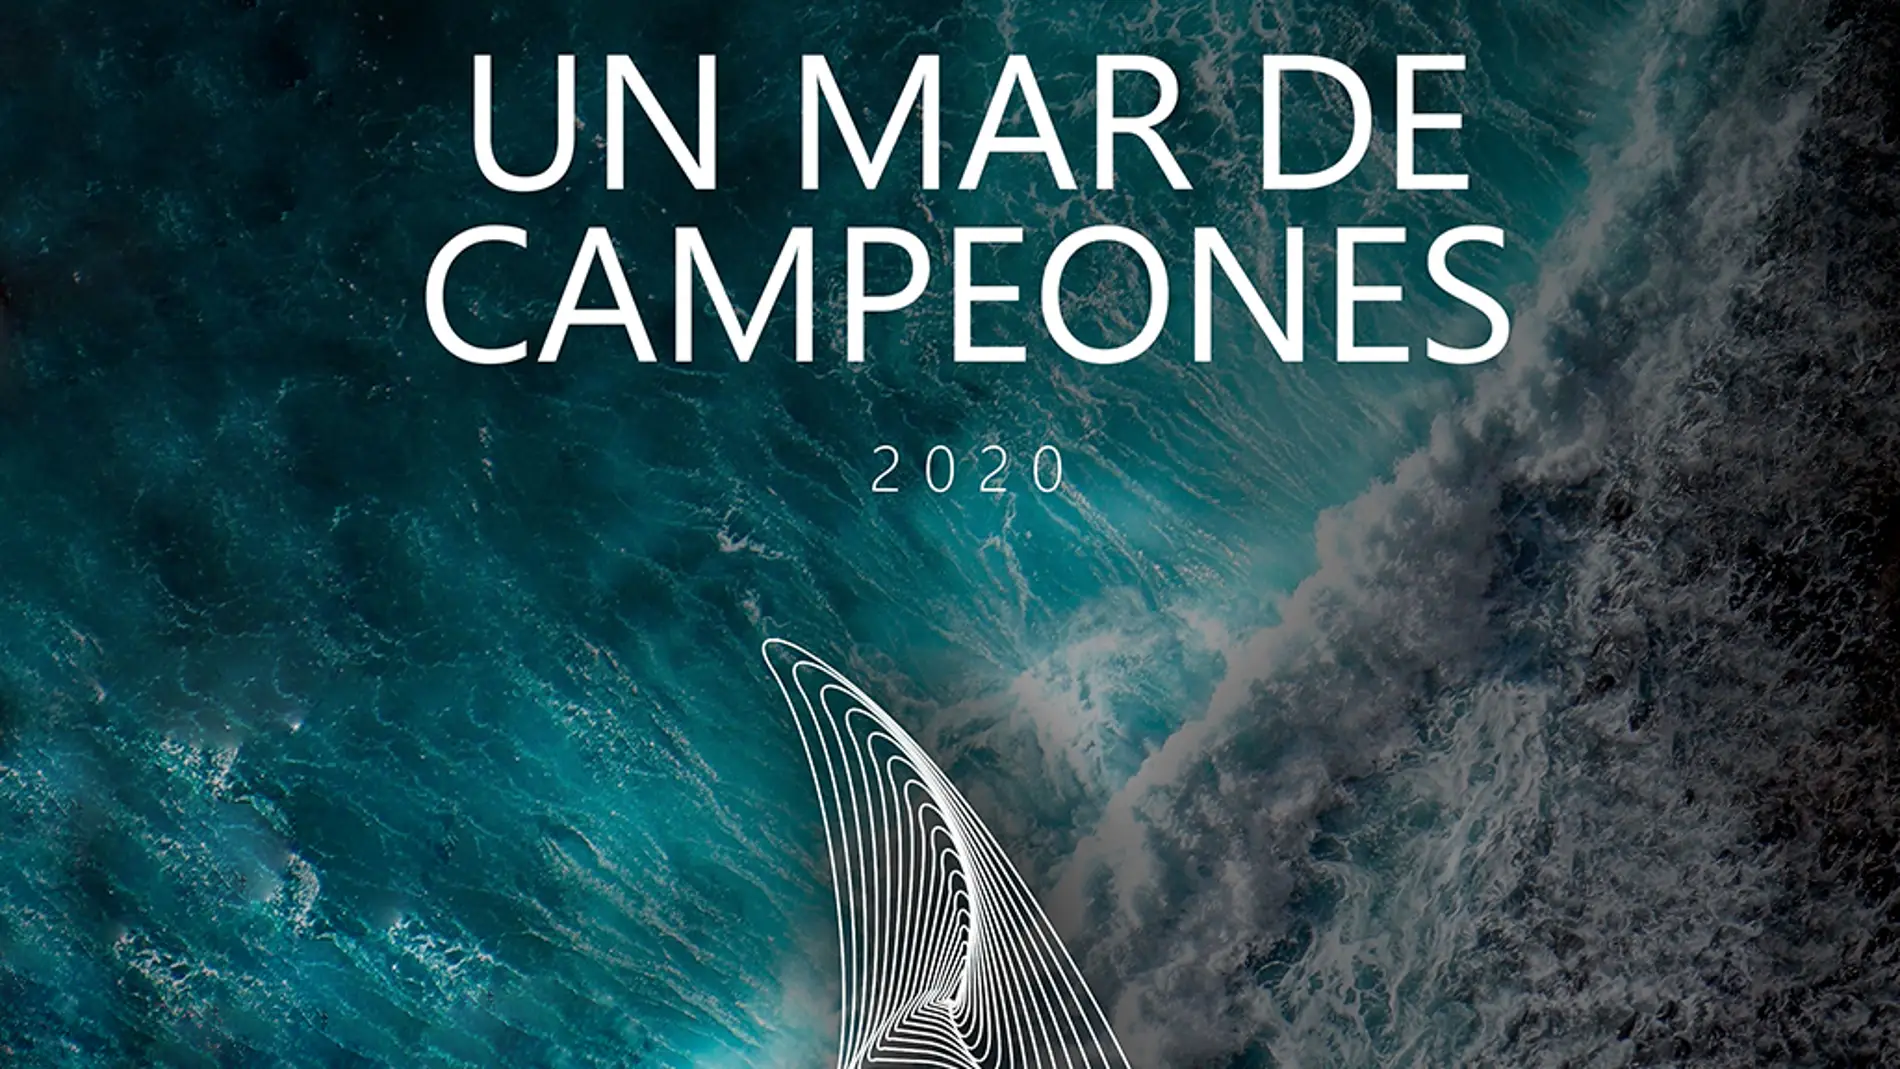 Para el Real Club Náutico Torrevieja, la Fiesta Anual de la Vela, es una de las citas más importantes, ya que la FVCV homenajea y reconoce el esfuerzo realizado por nuestros mejores deportistas durante la temporada 